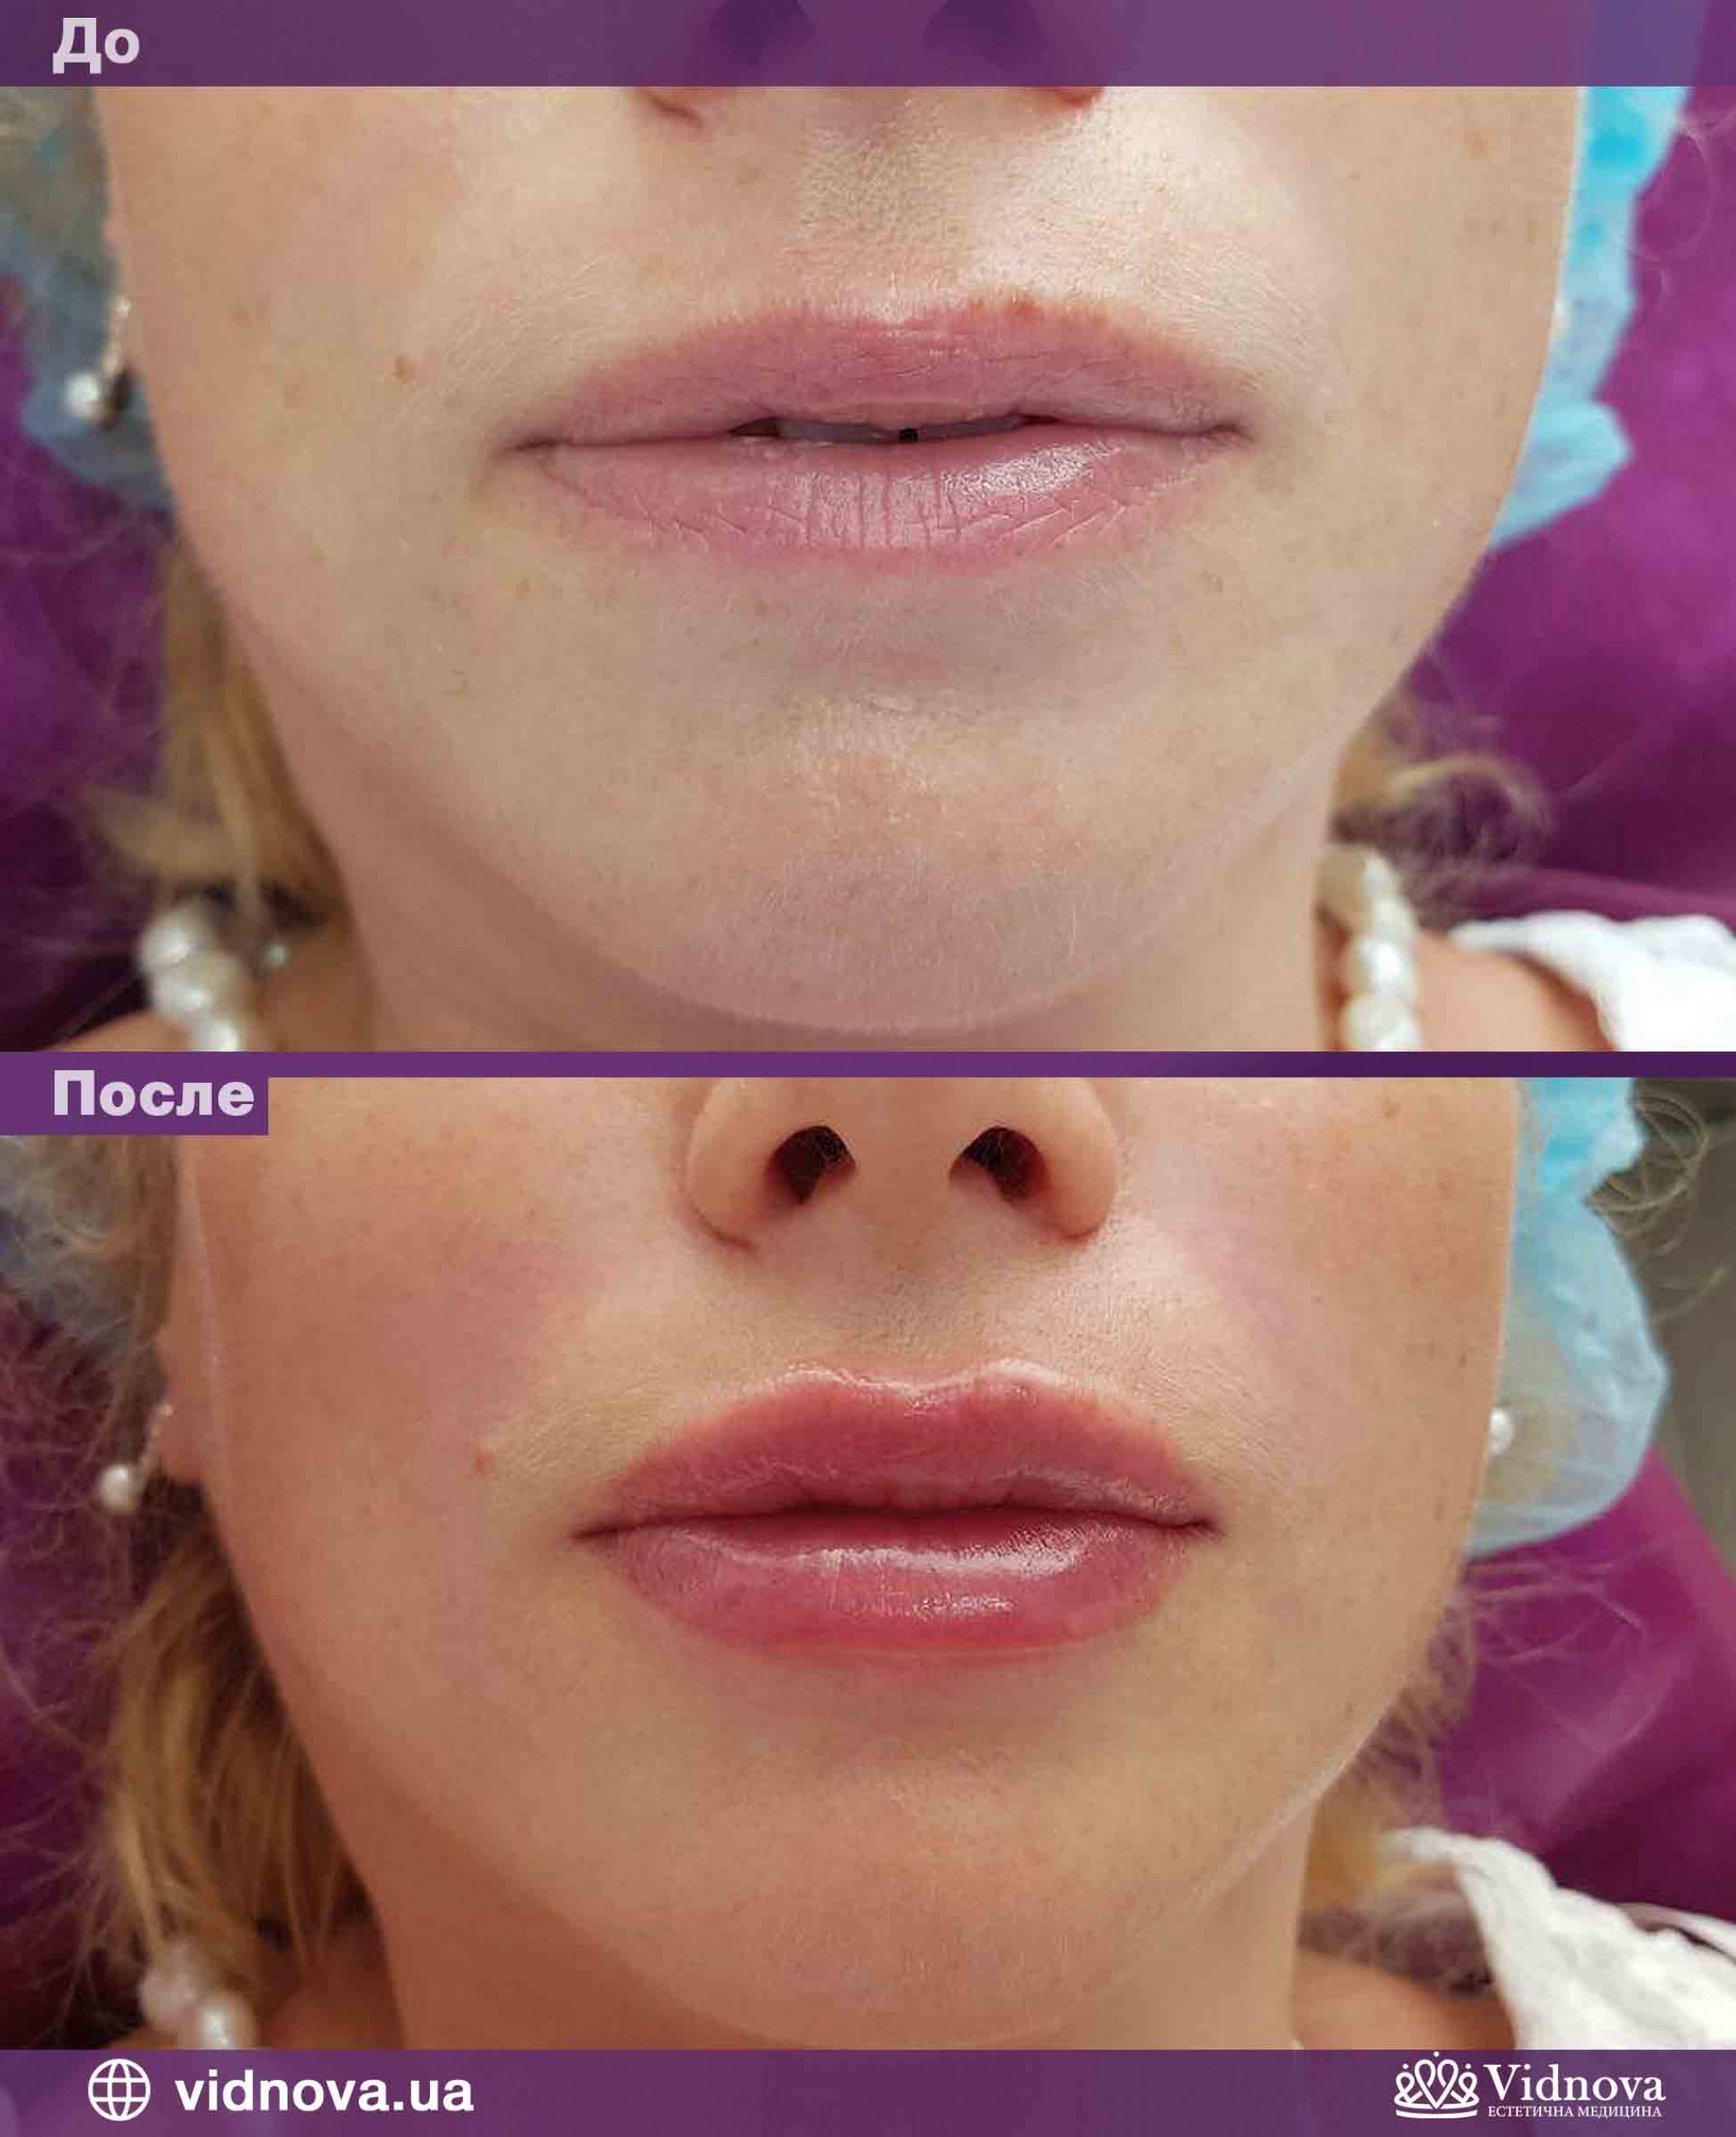 Увеличение губ до и после отзывы. Контурная пластика губ принцесс волюм. Техники контурной пластики губ филлерами.